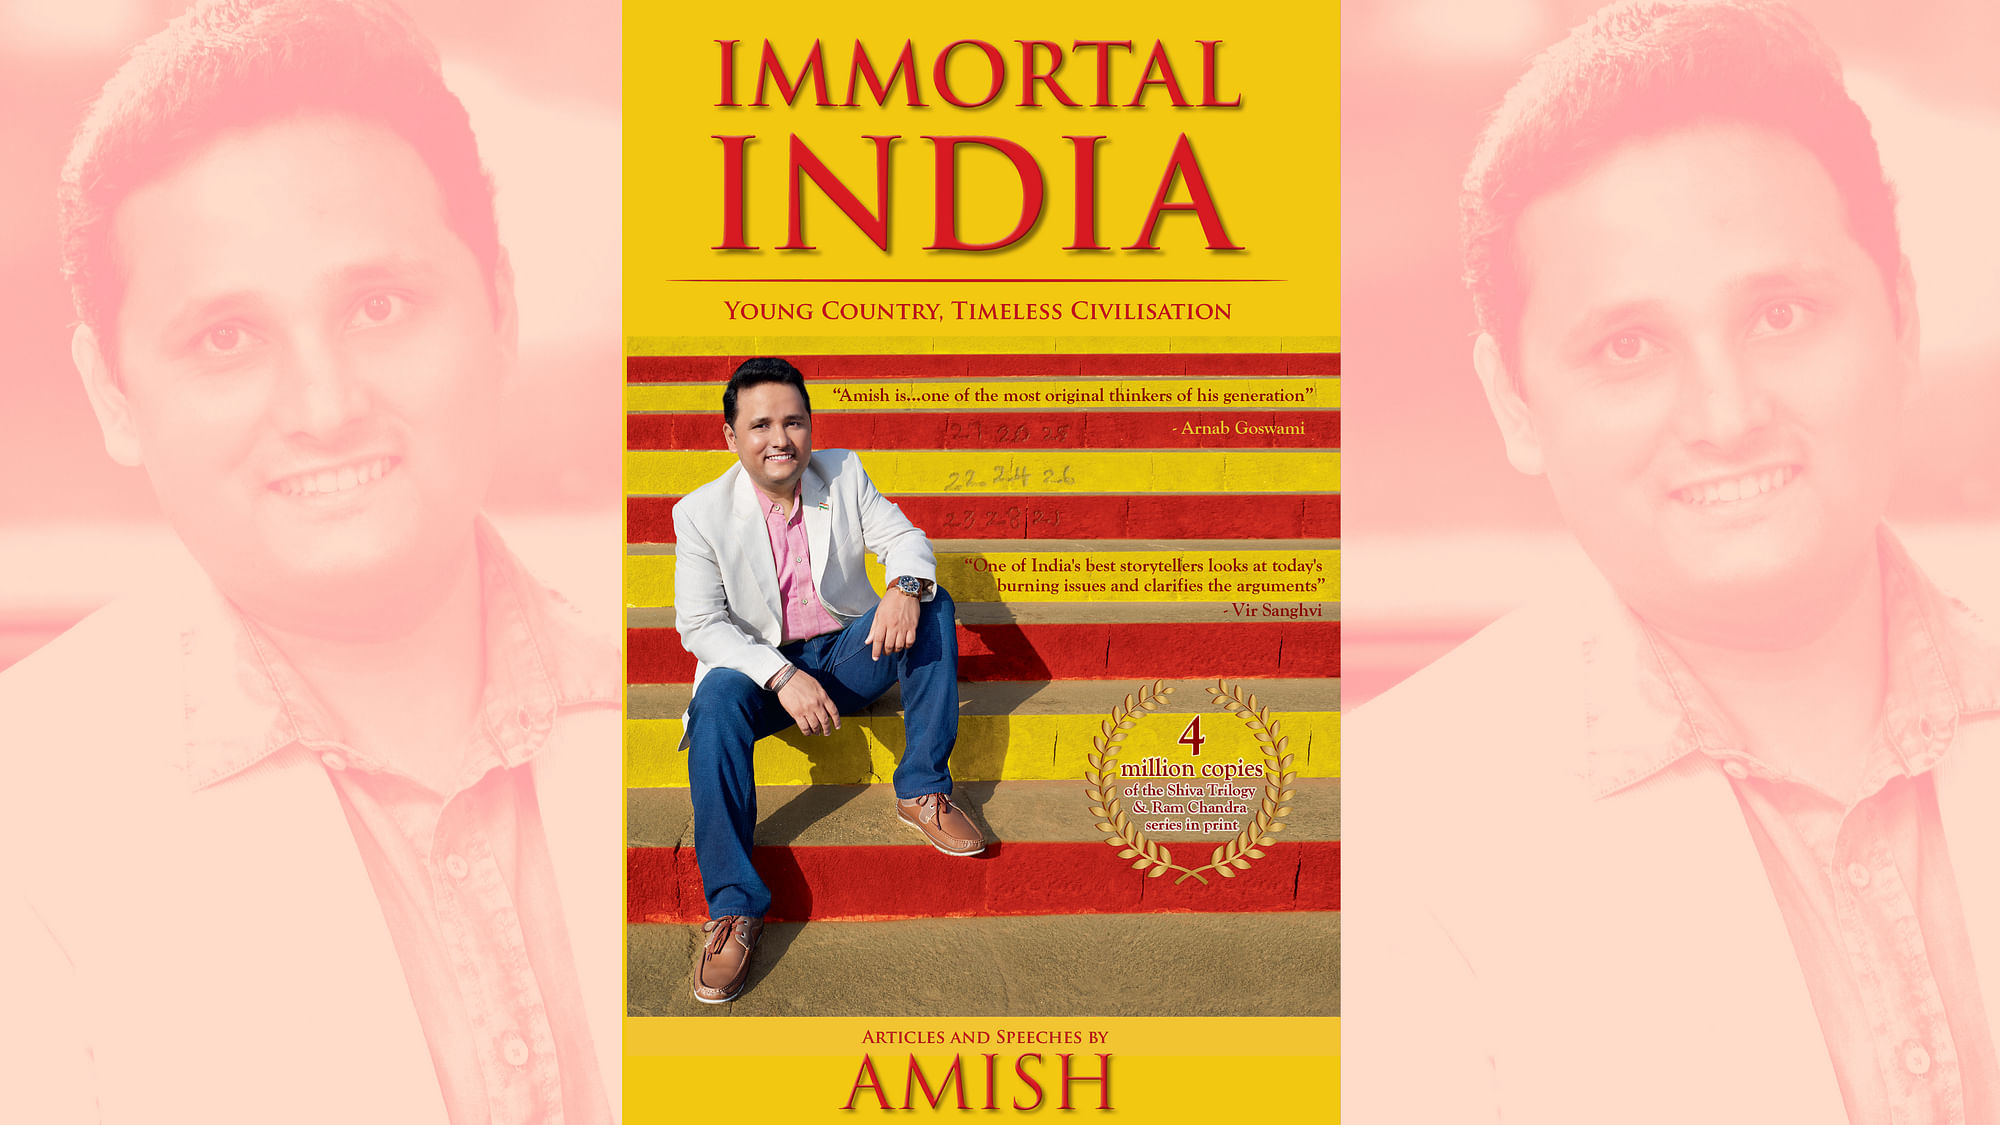 Amish Tripathi’s “Immortal India”